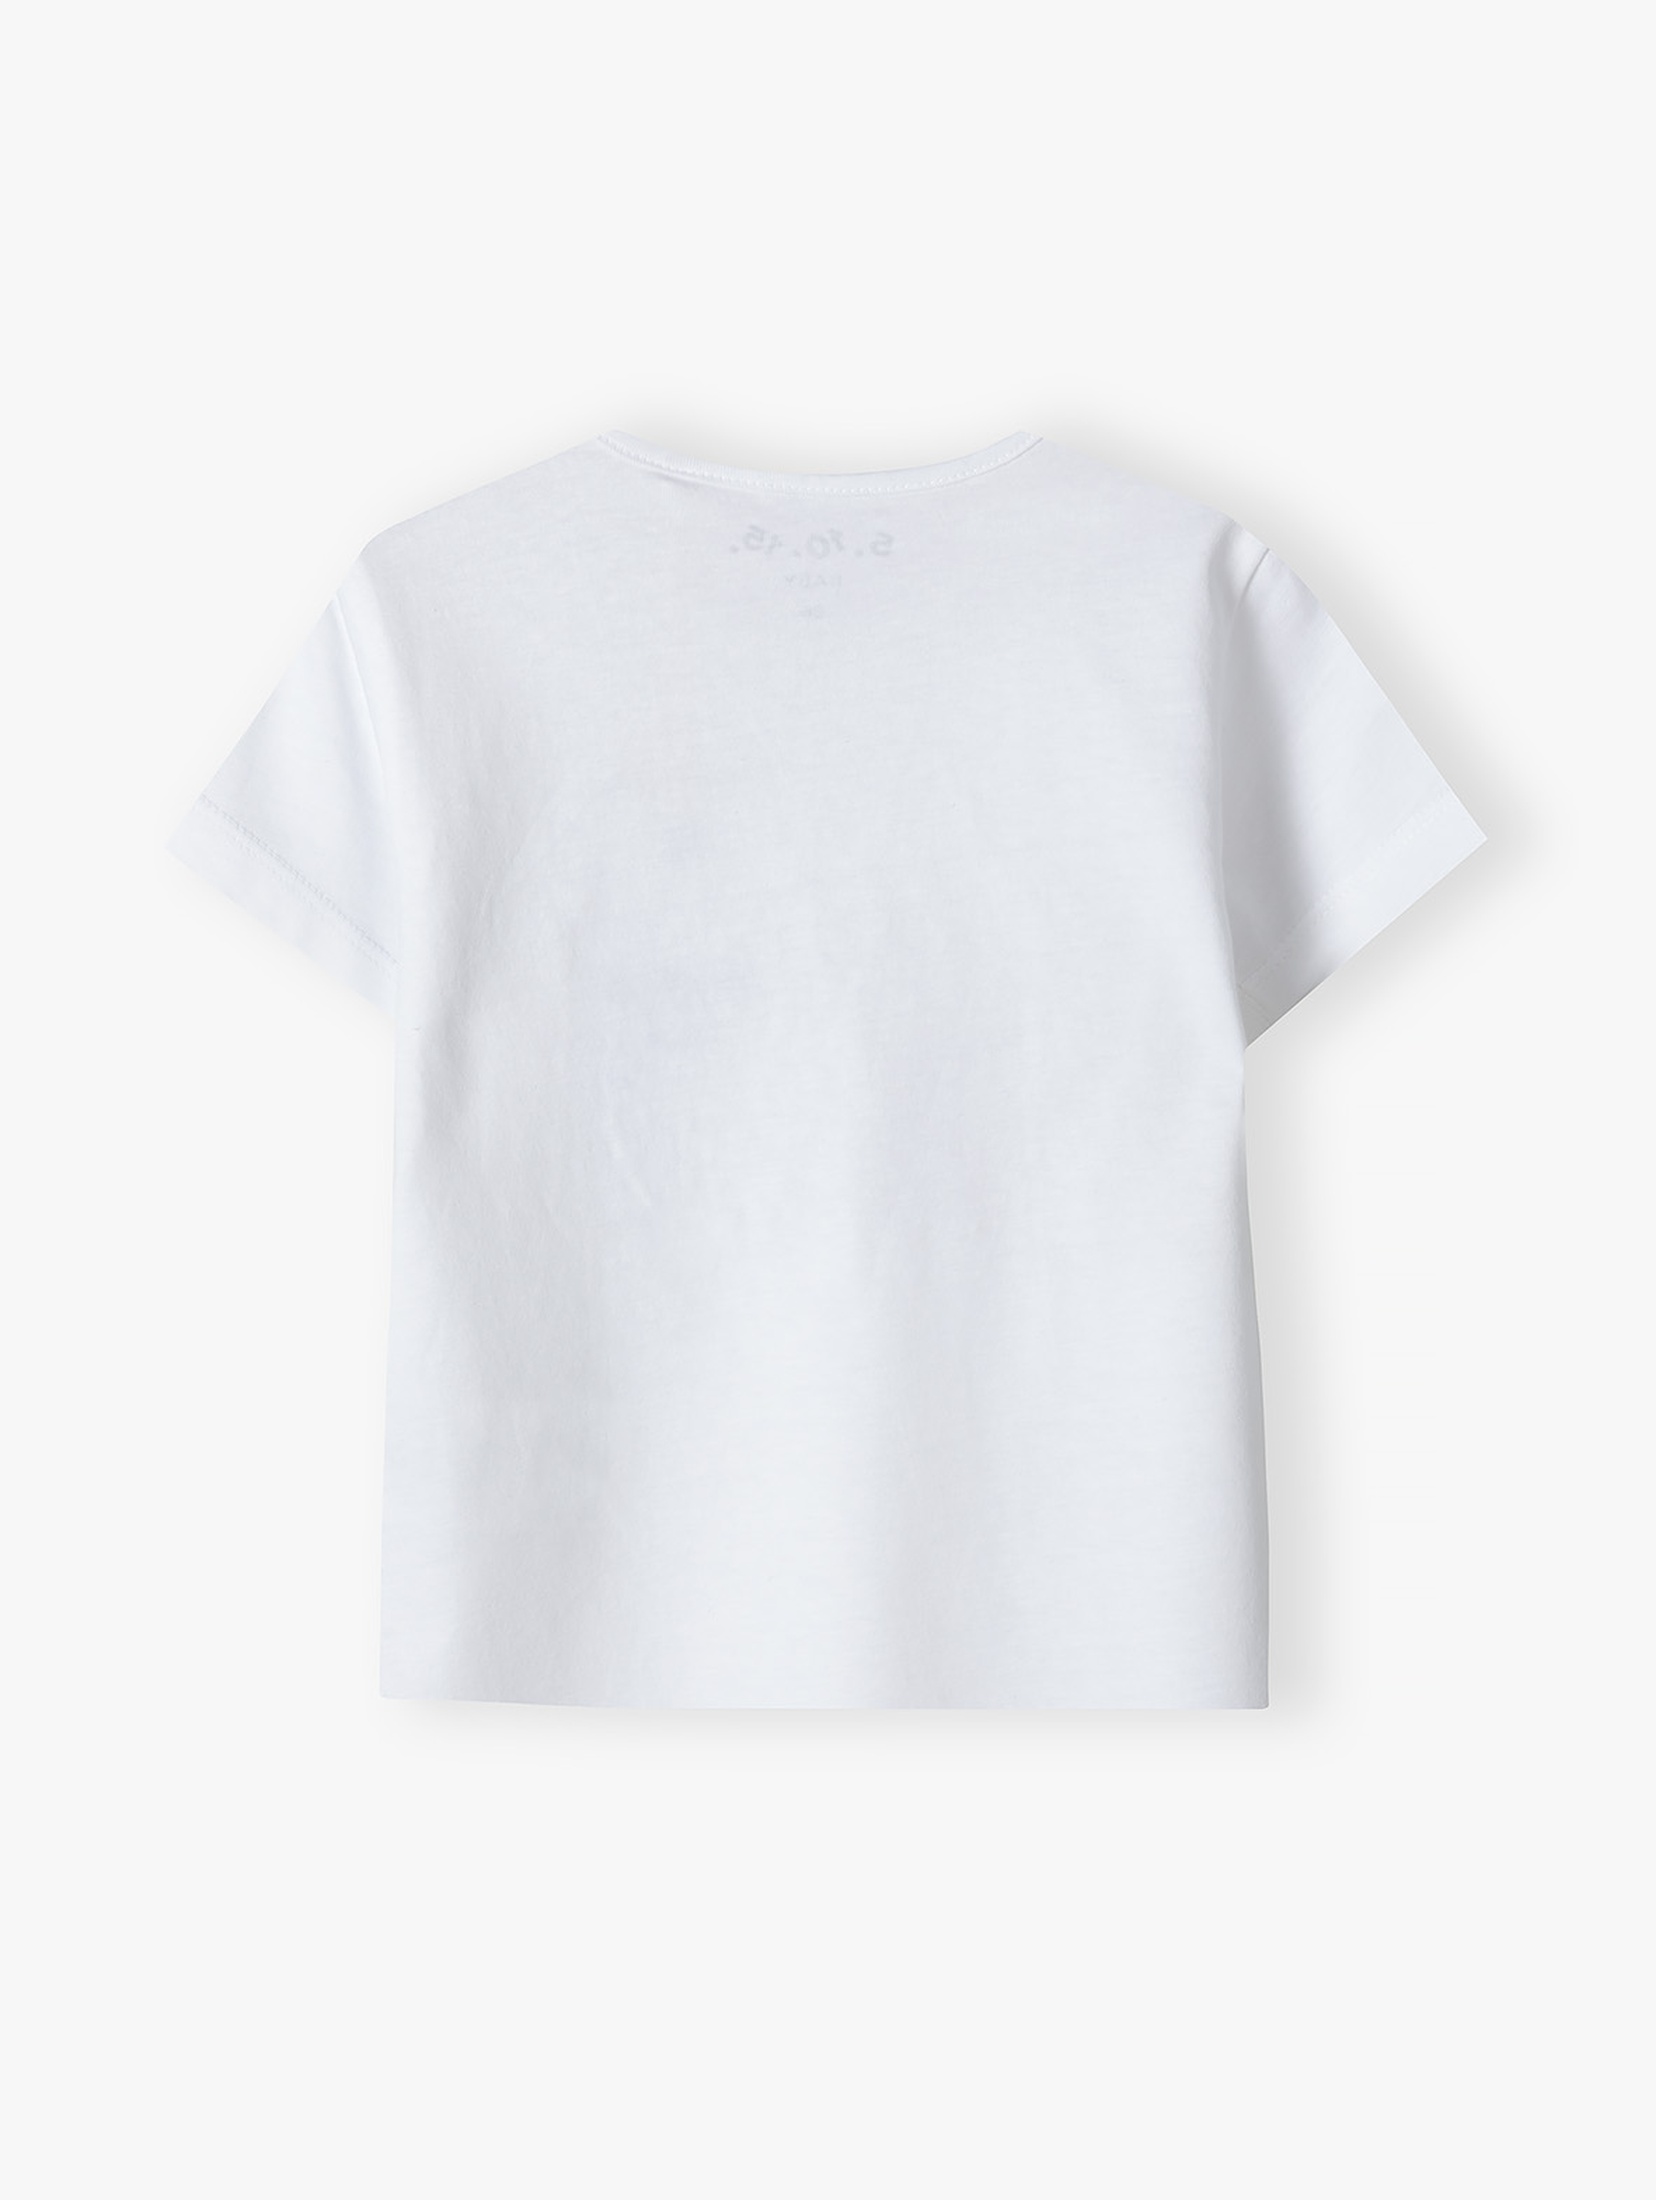 Biały bawełniany t-shirt niemowlęcy z króliczkiem